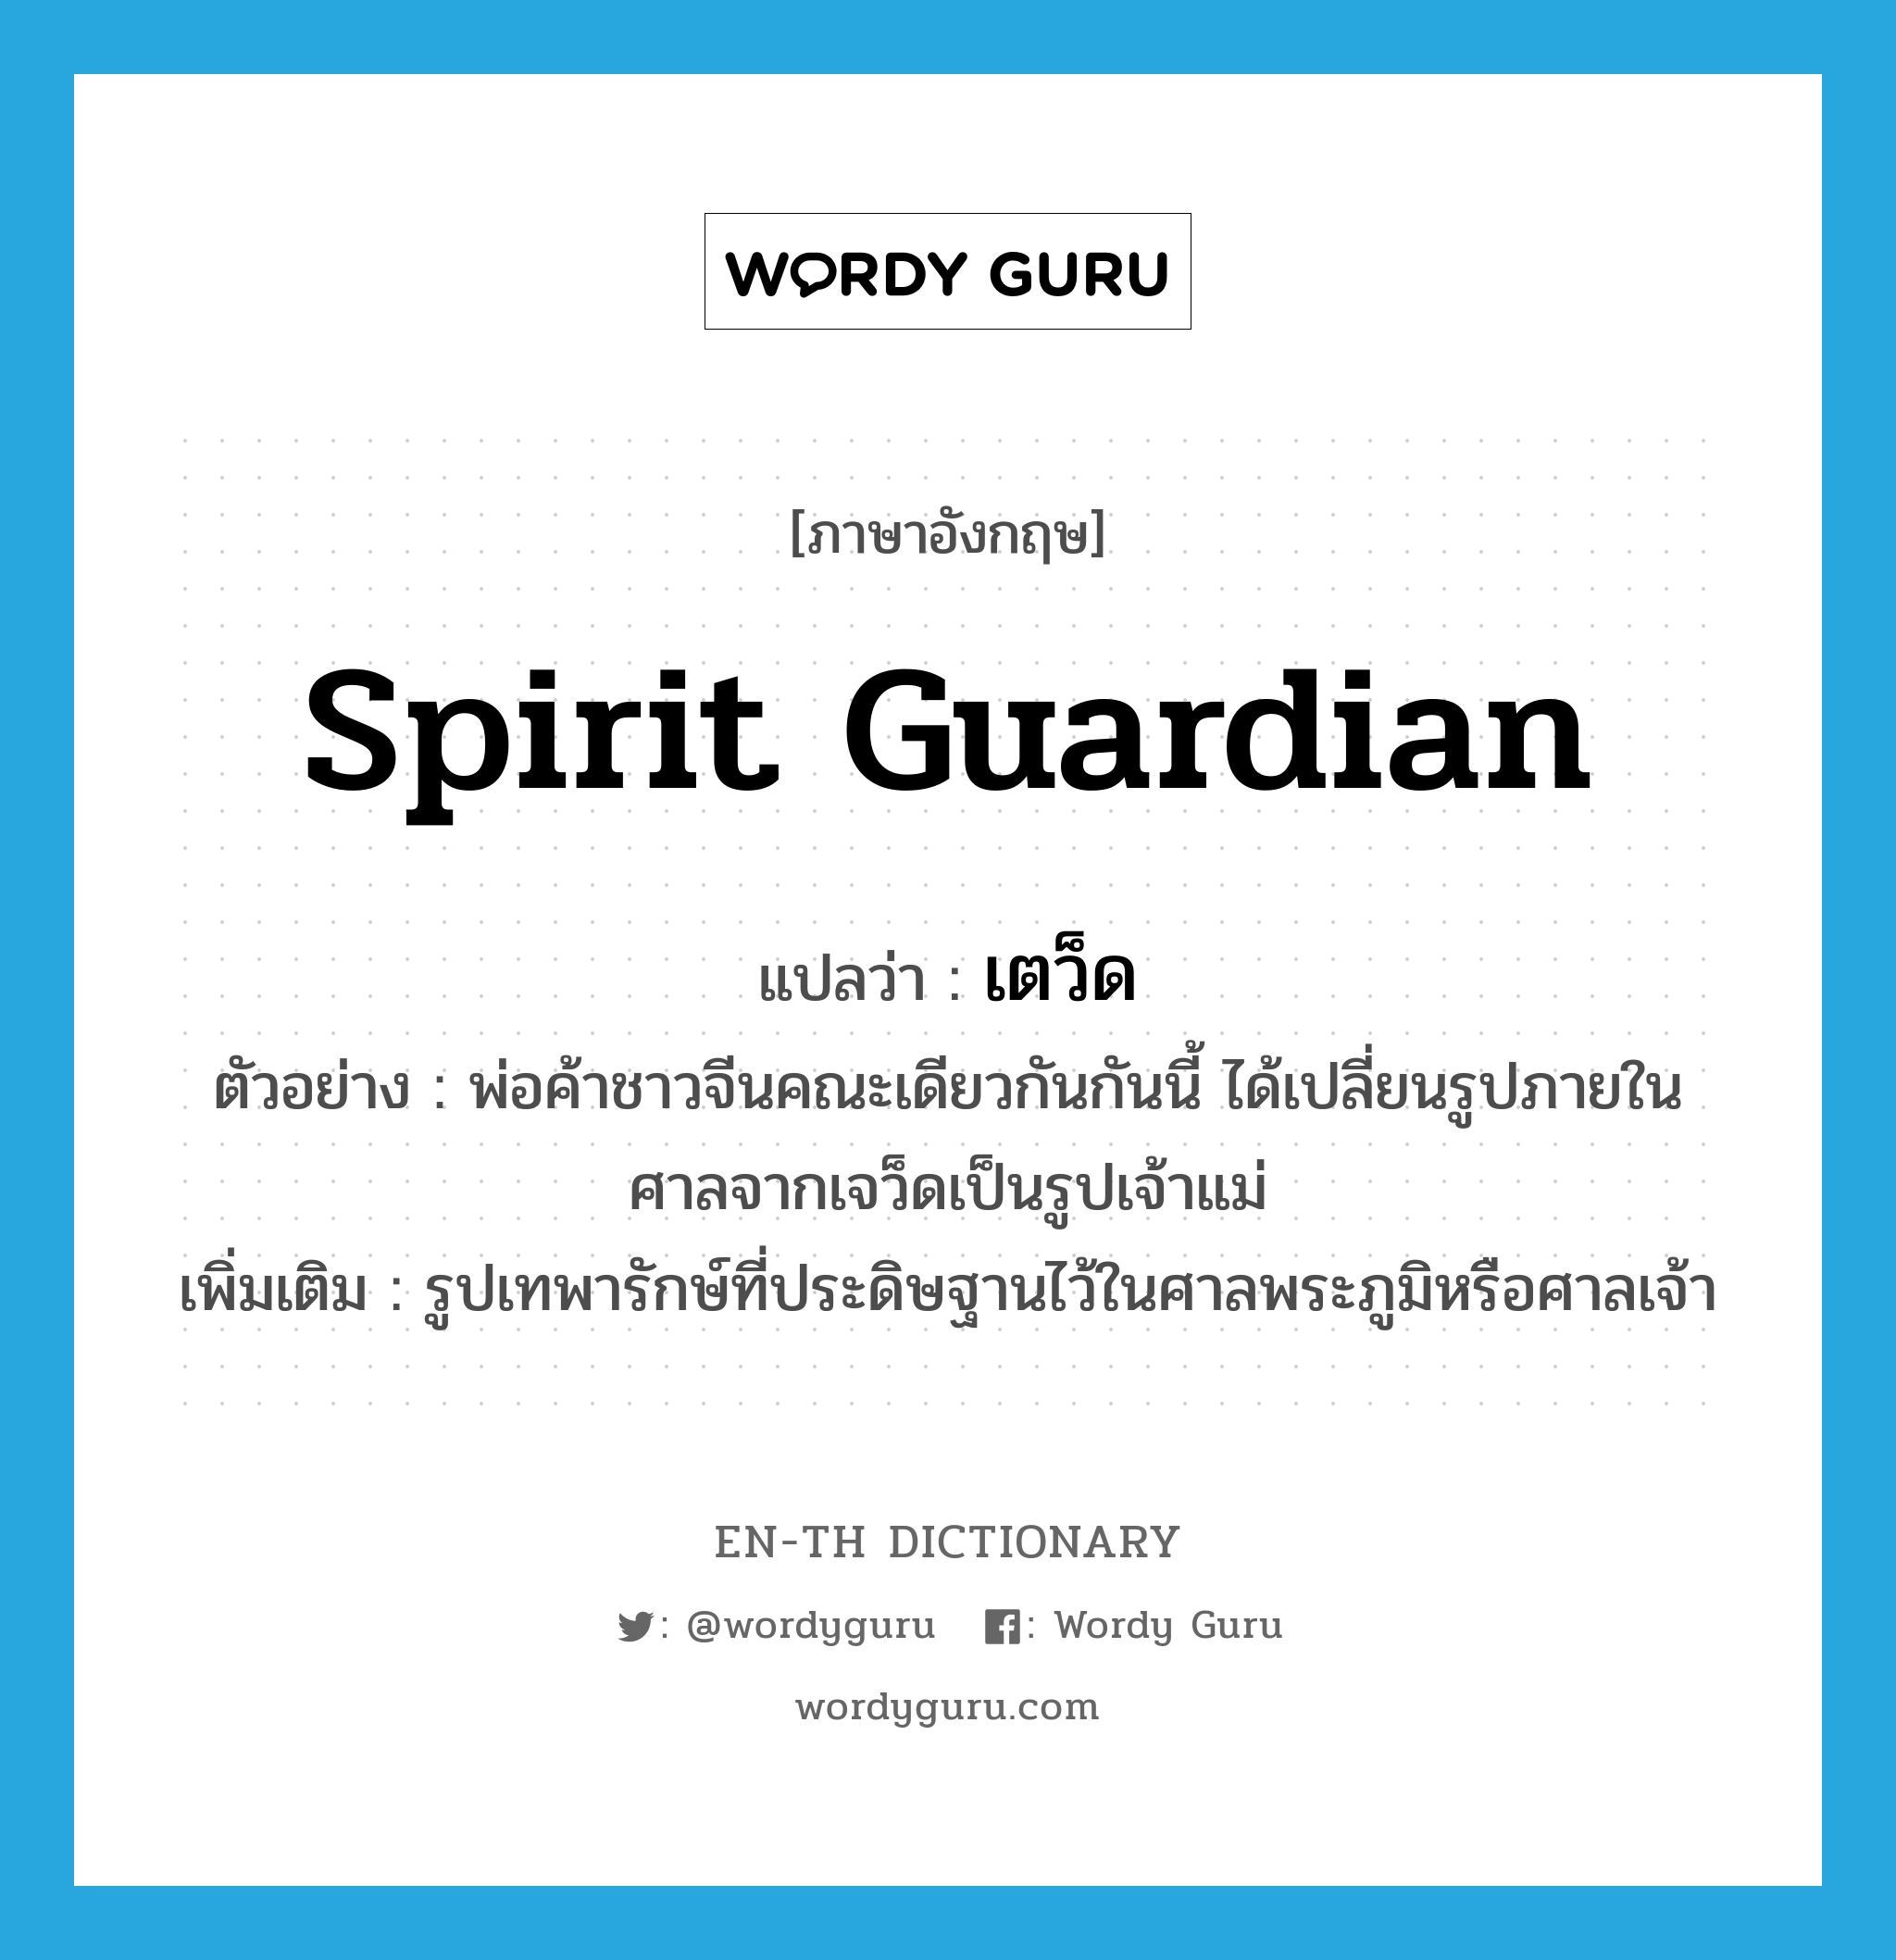 spirit guardian แปลว่า?, คำศัพท์ภาษาอังกฤษ spirit guardian แปลว่า เตว็ด ประเภท N ตัวอย่าง พ่อค้าชาวจีนคณะเดียวกันกันนี้ ได้เปลี่ยนรูปภายในศาลจากเจว็ดเป็นรูปเจ้าแม่ เพิ่มเติม รูปเทพารักษ์ที่ประดิษฐานไว้ในศาลพระภูมิหรือศาลเจ้า หมวด N